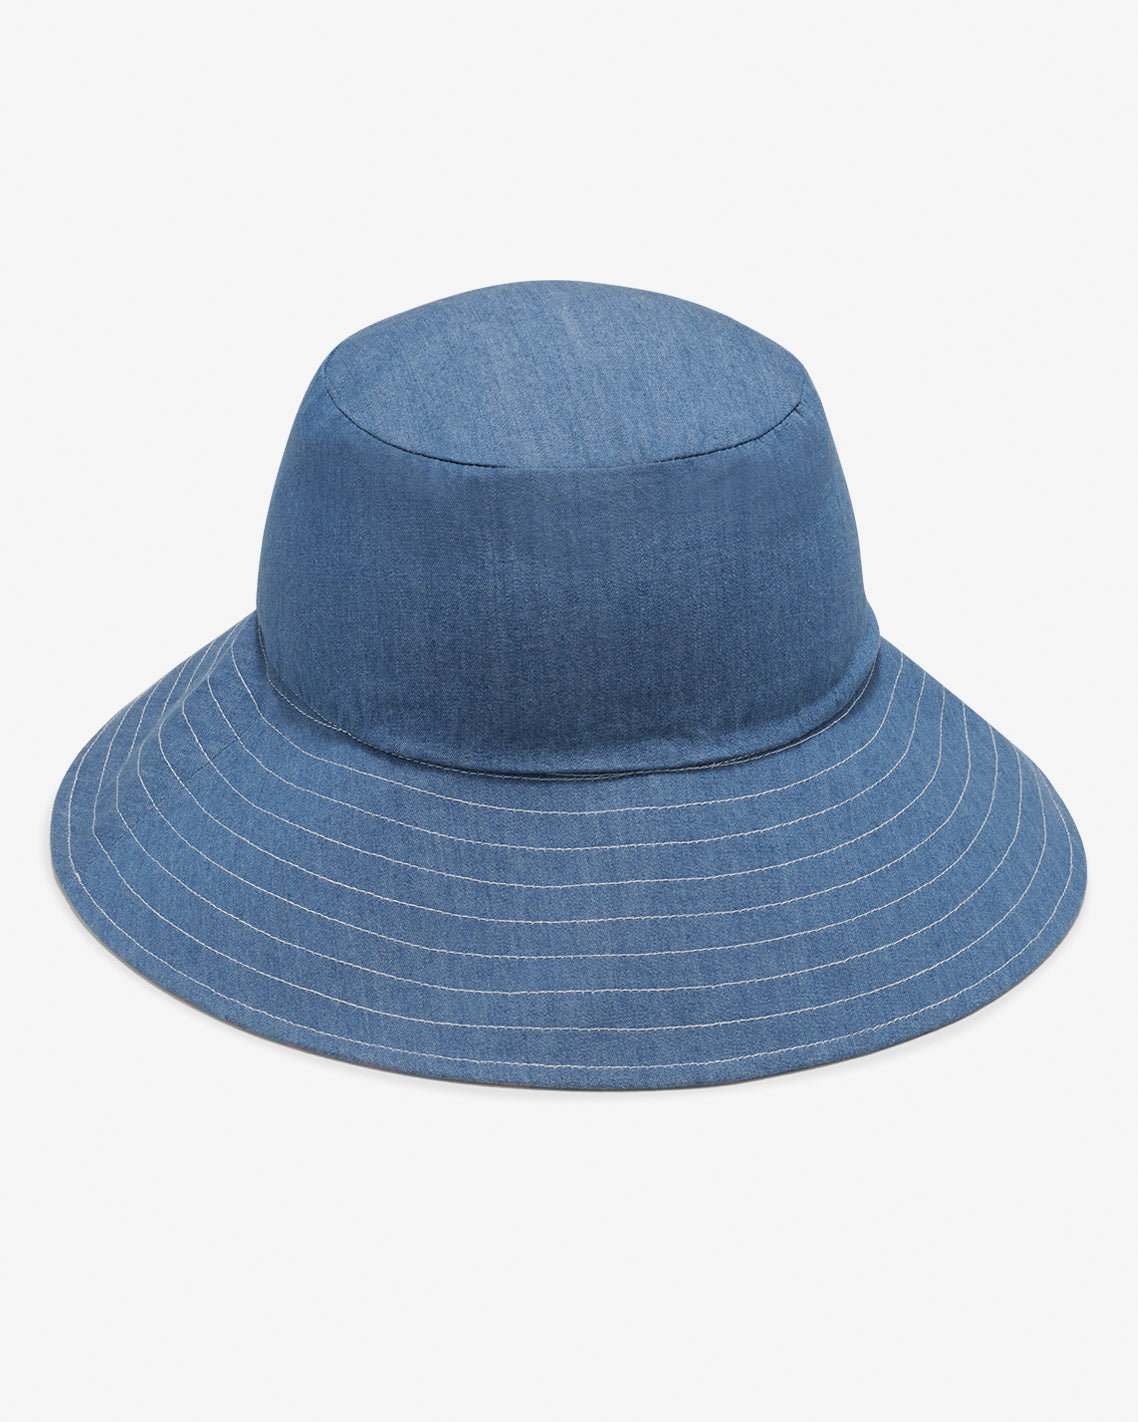 Reversible Bucket Hat in Seersucker Stripe